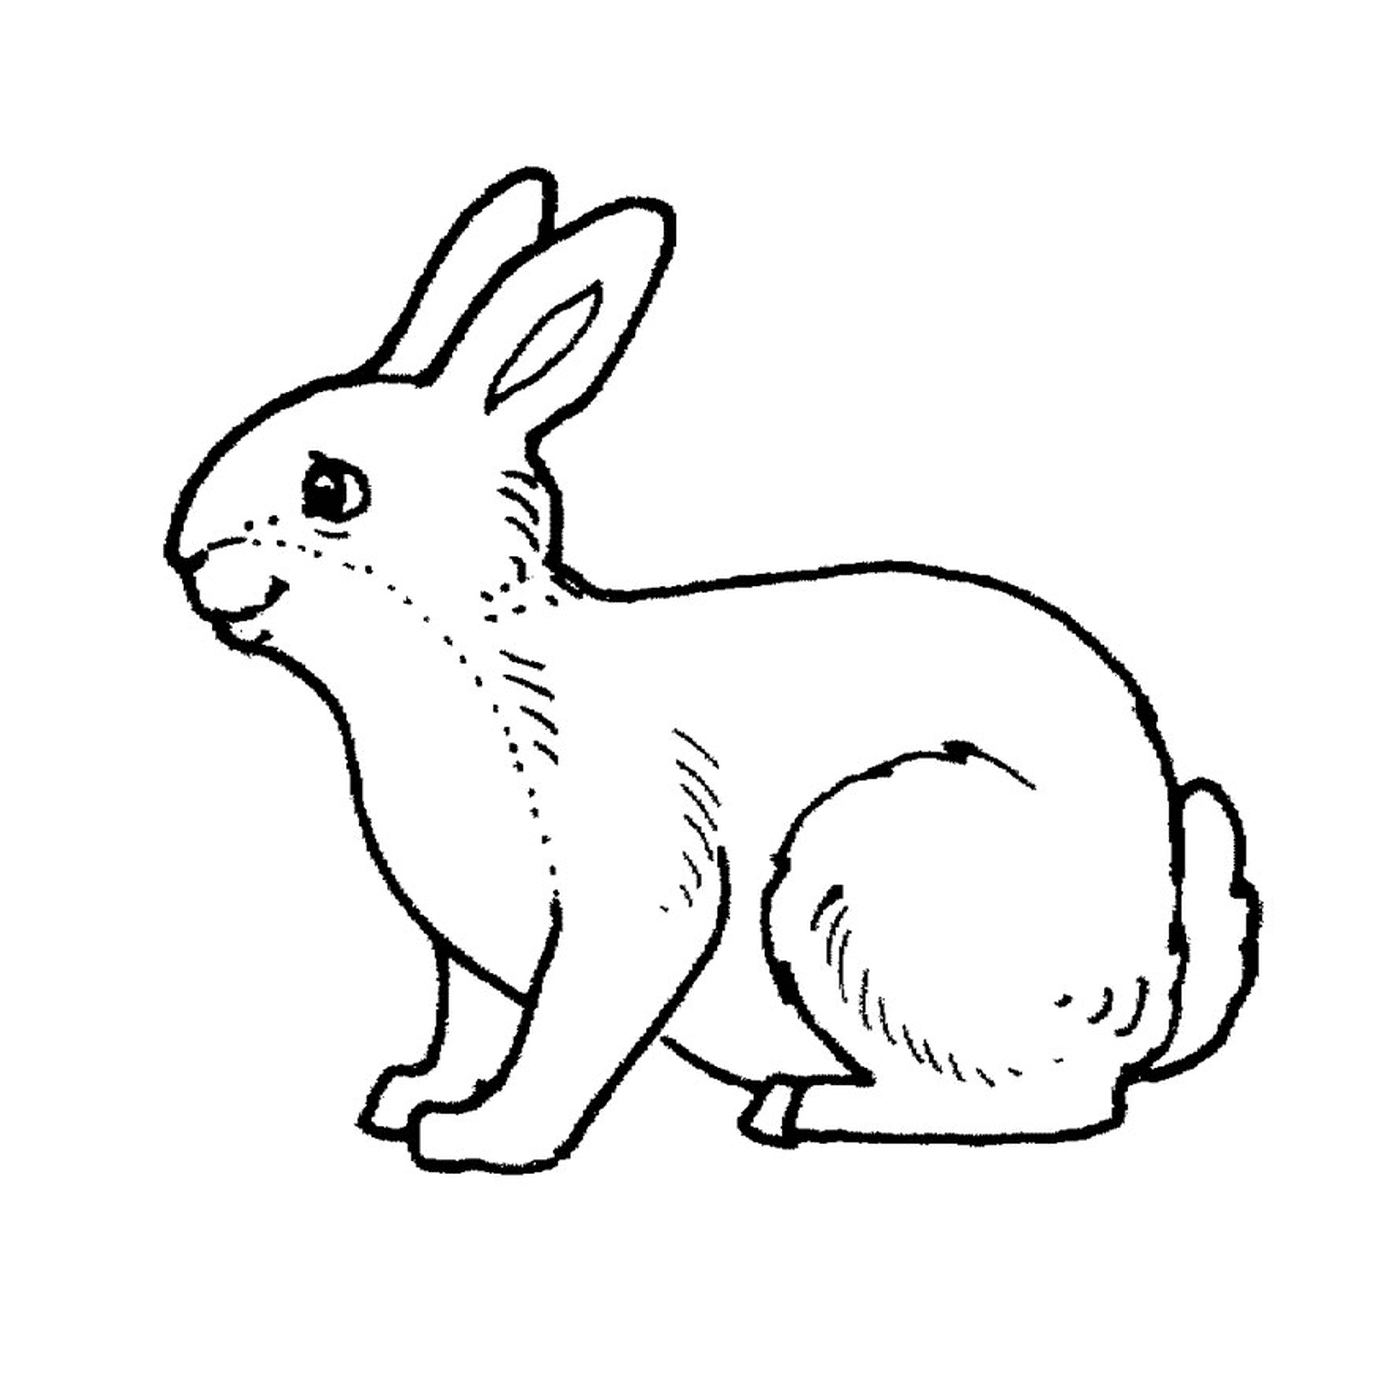   Un lapin 